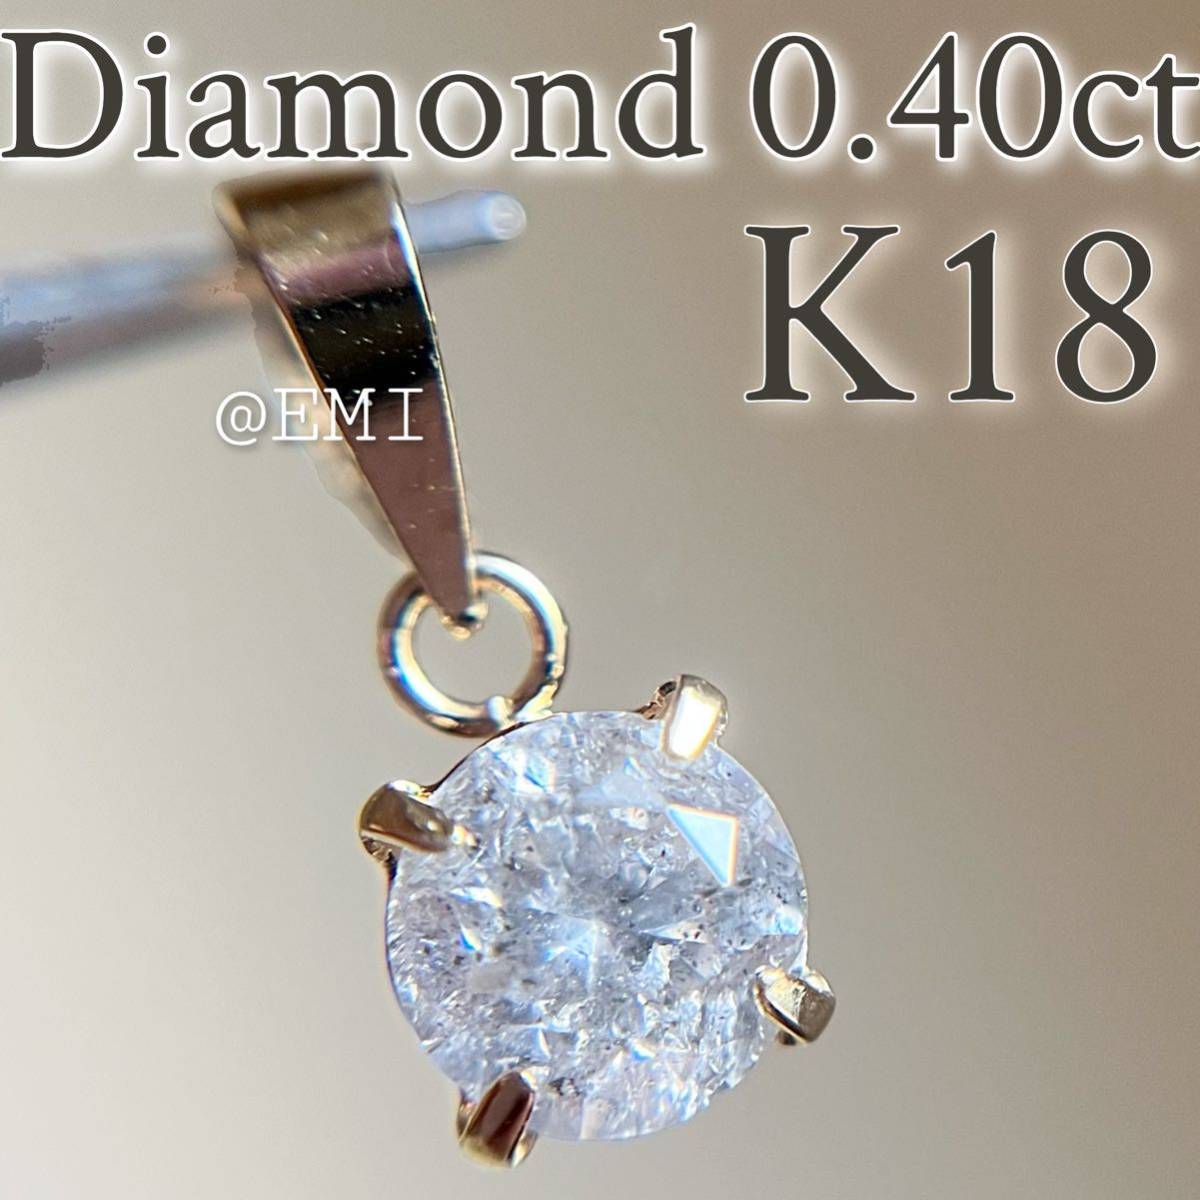 SALE 特価 】K18 天然ダイヤモンド 0 40カラット ペンダントトップ 